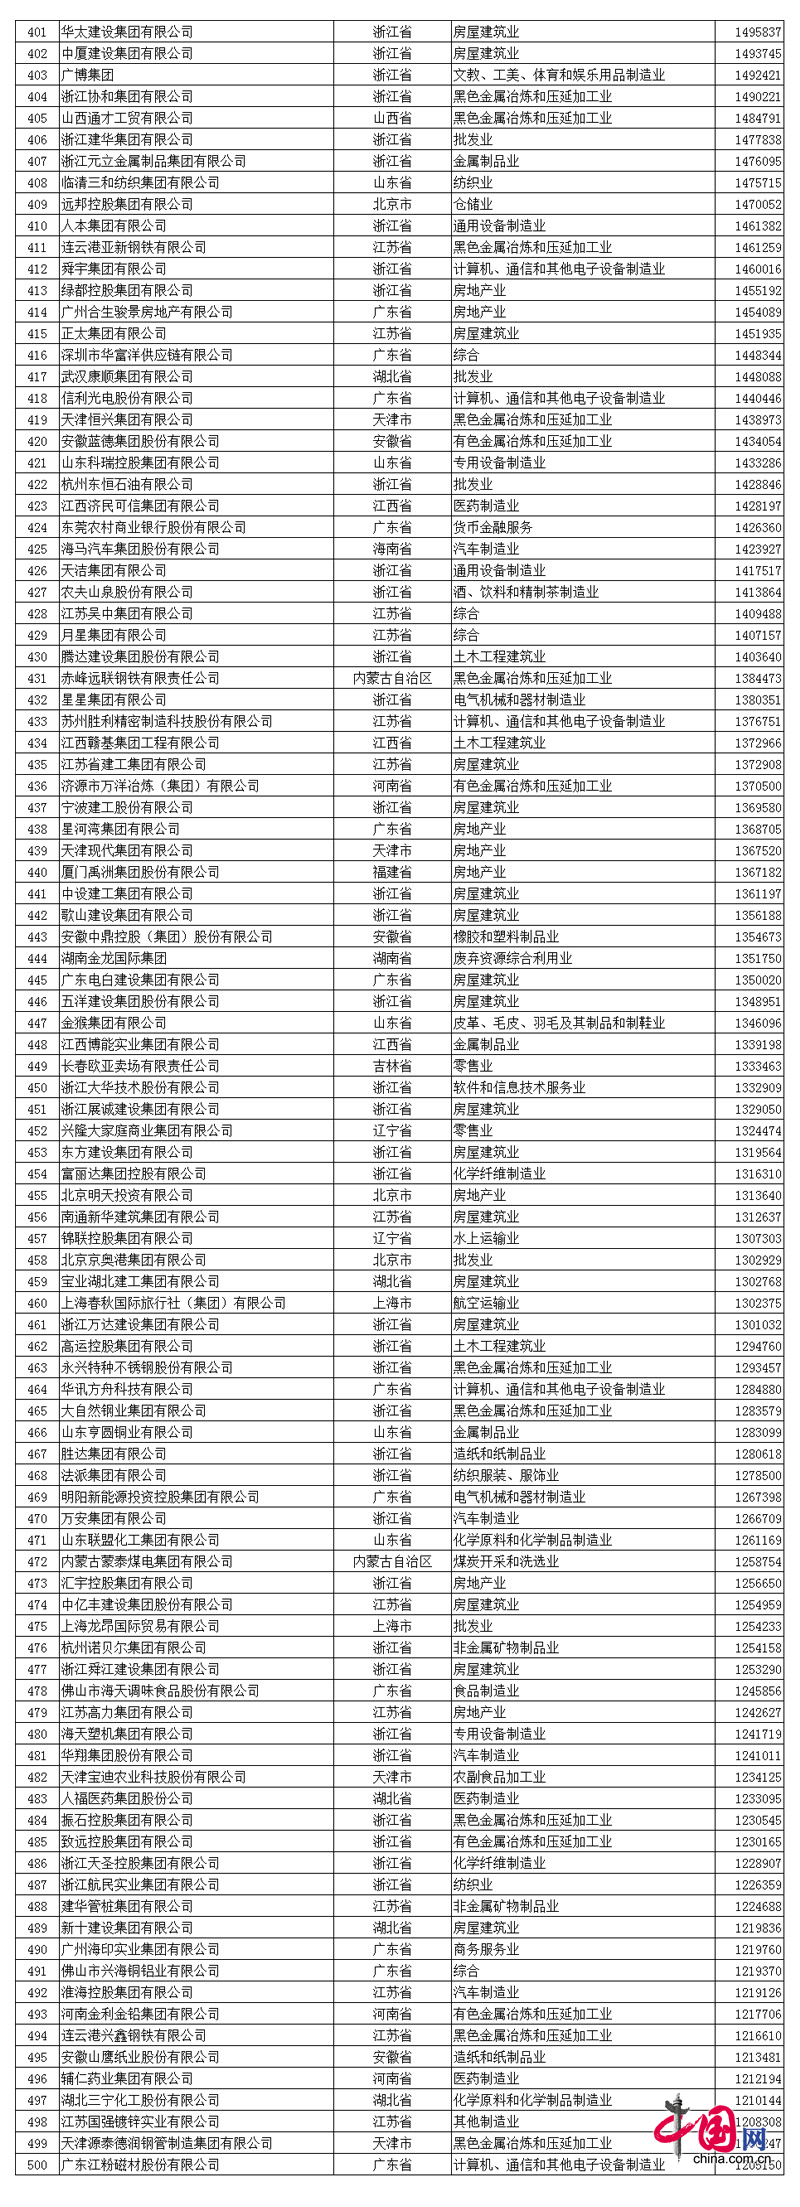 2017中国民营企业500强名单